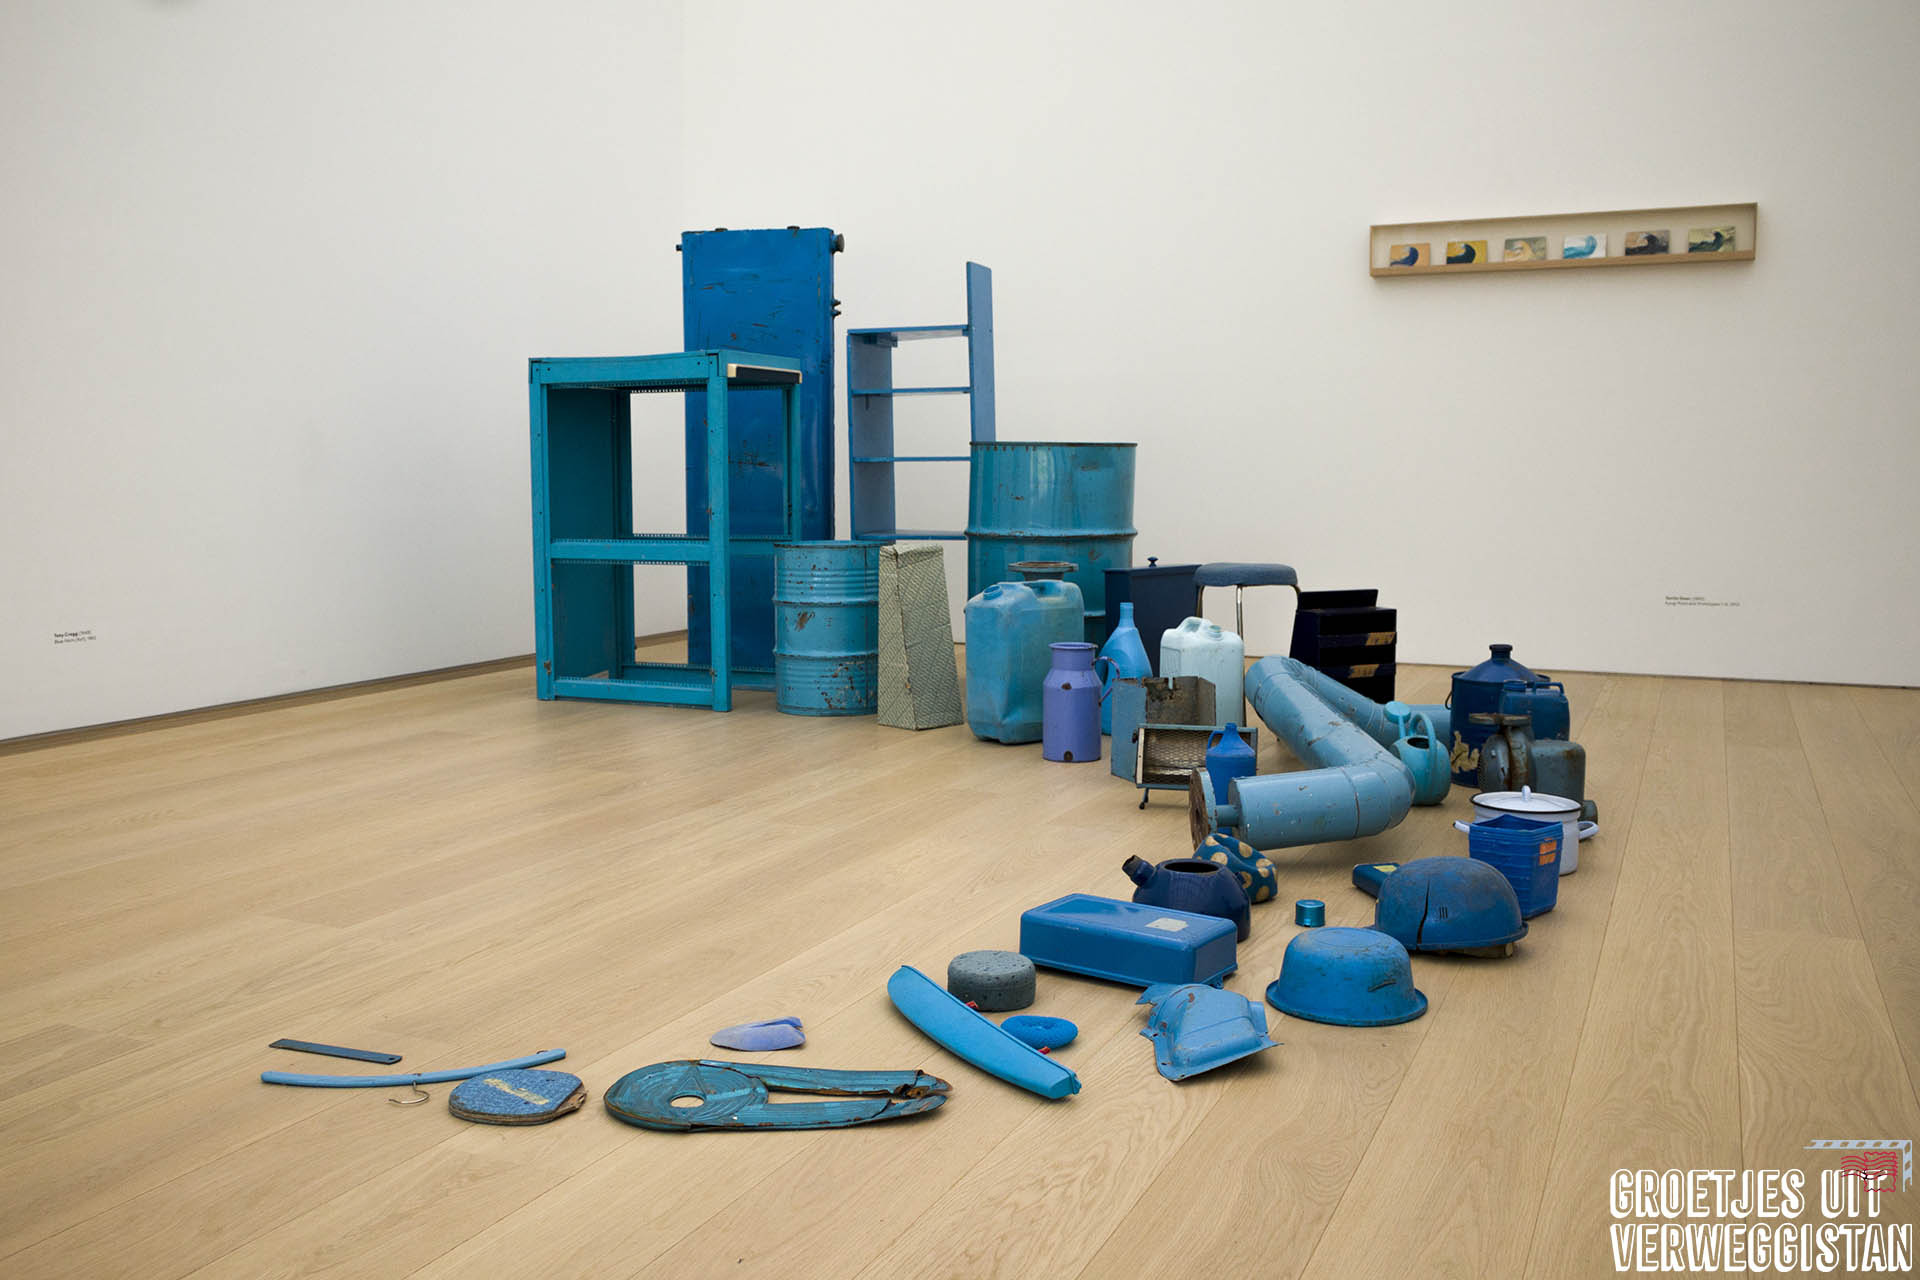 Een rij gebruiksvoorwerpen die blauw zijn gemaakt: kunstwerk van Tony Cragg,